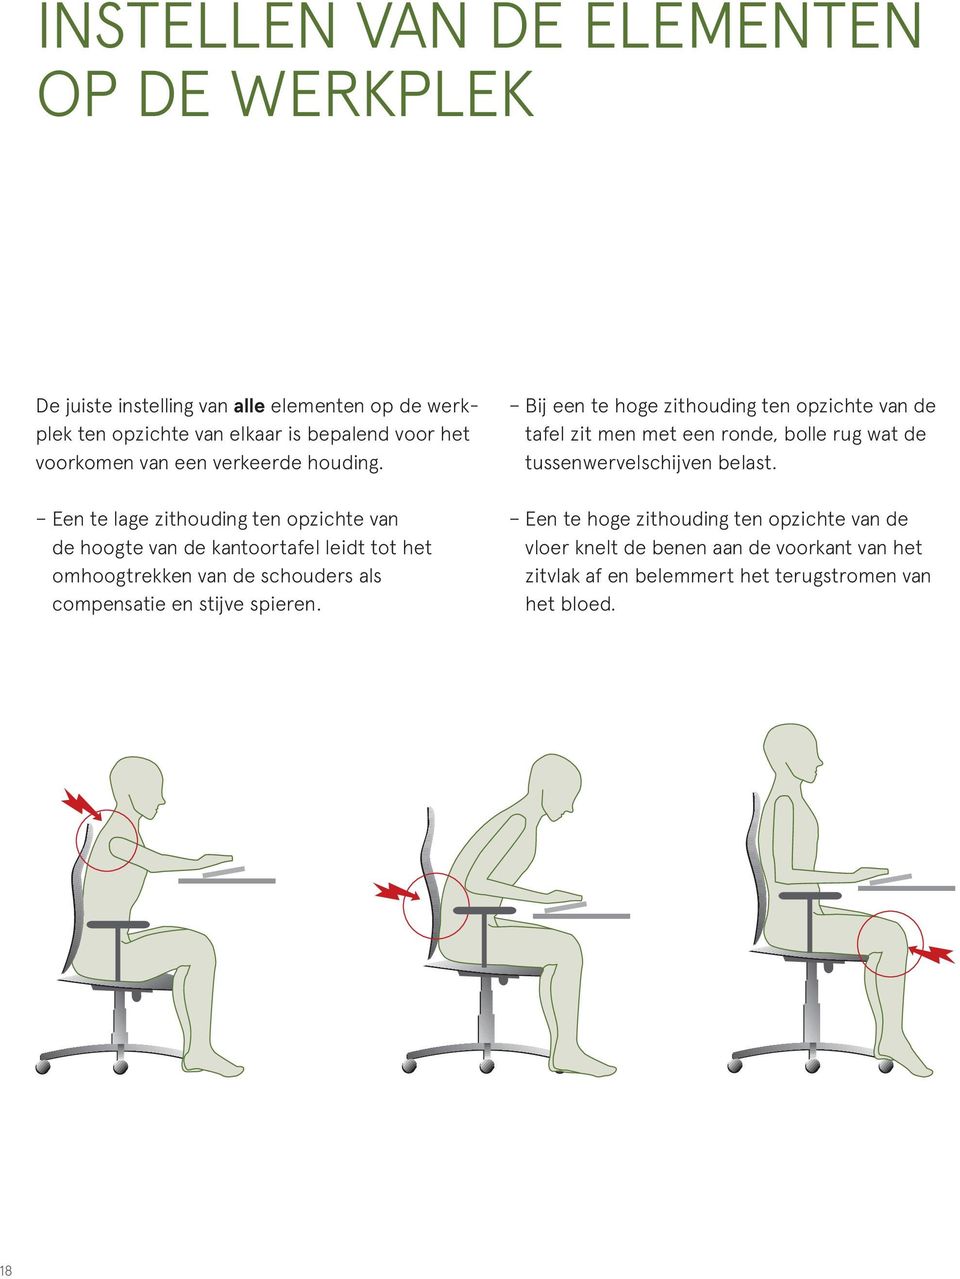 Een te lage zithouding ten opzichte van de hoogte van de kantoortafel leidt tot het omhoogtrekken van de schouders als compensatie en stijve spieren.